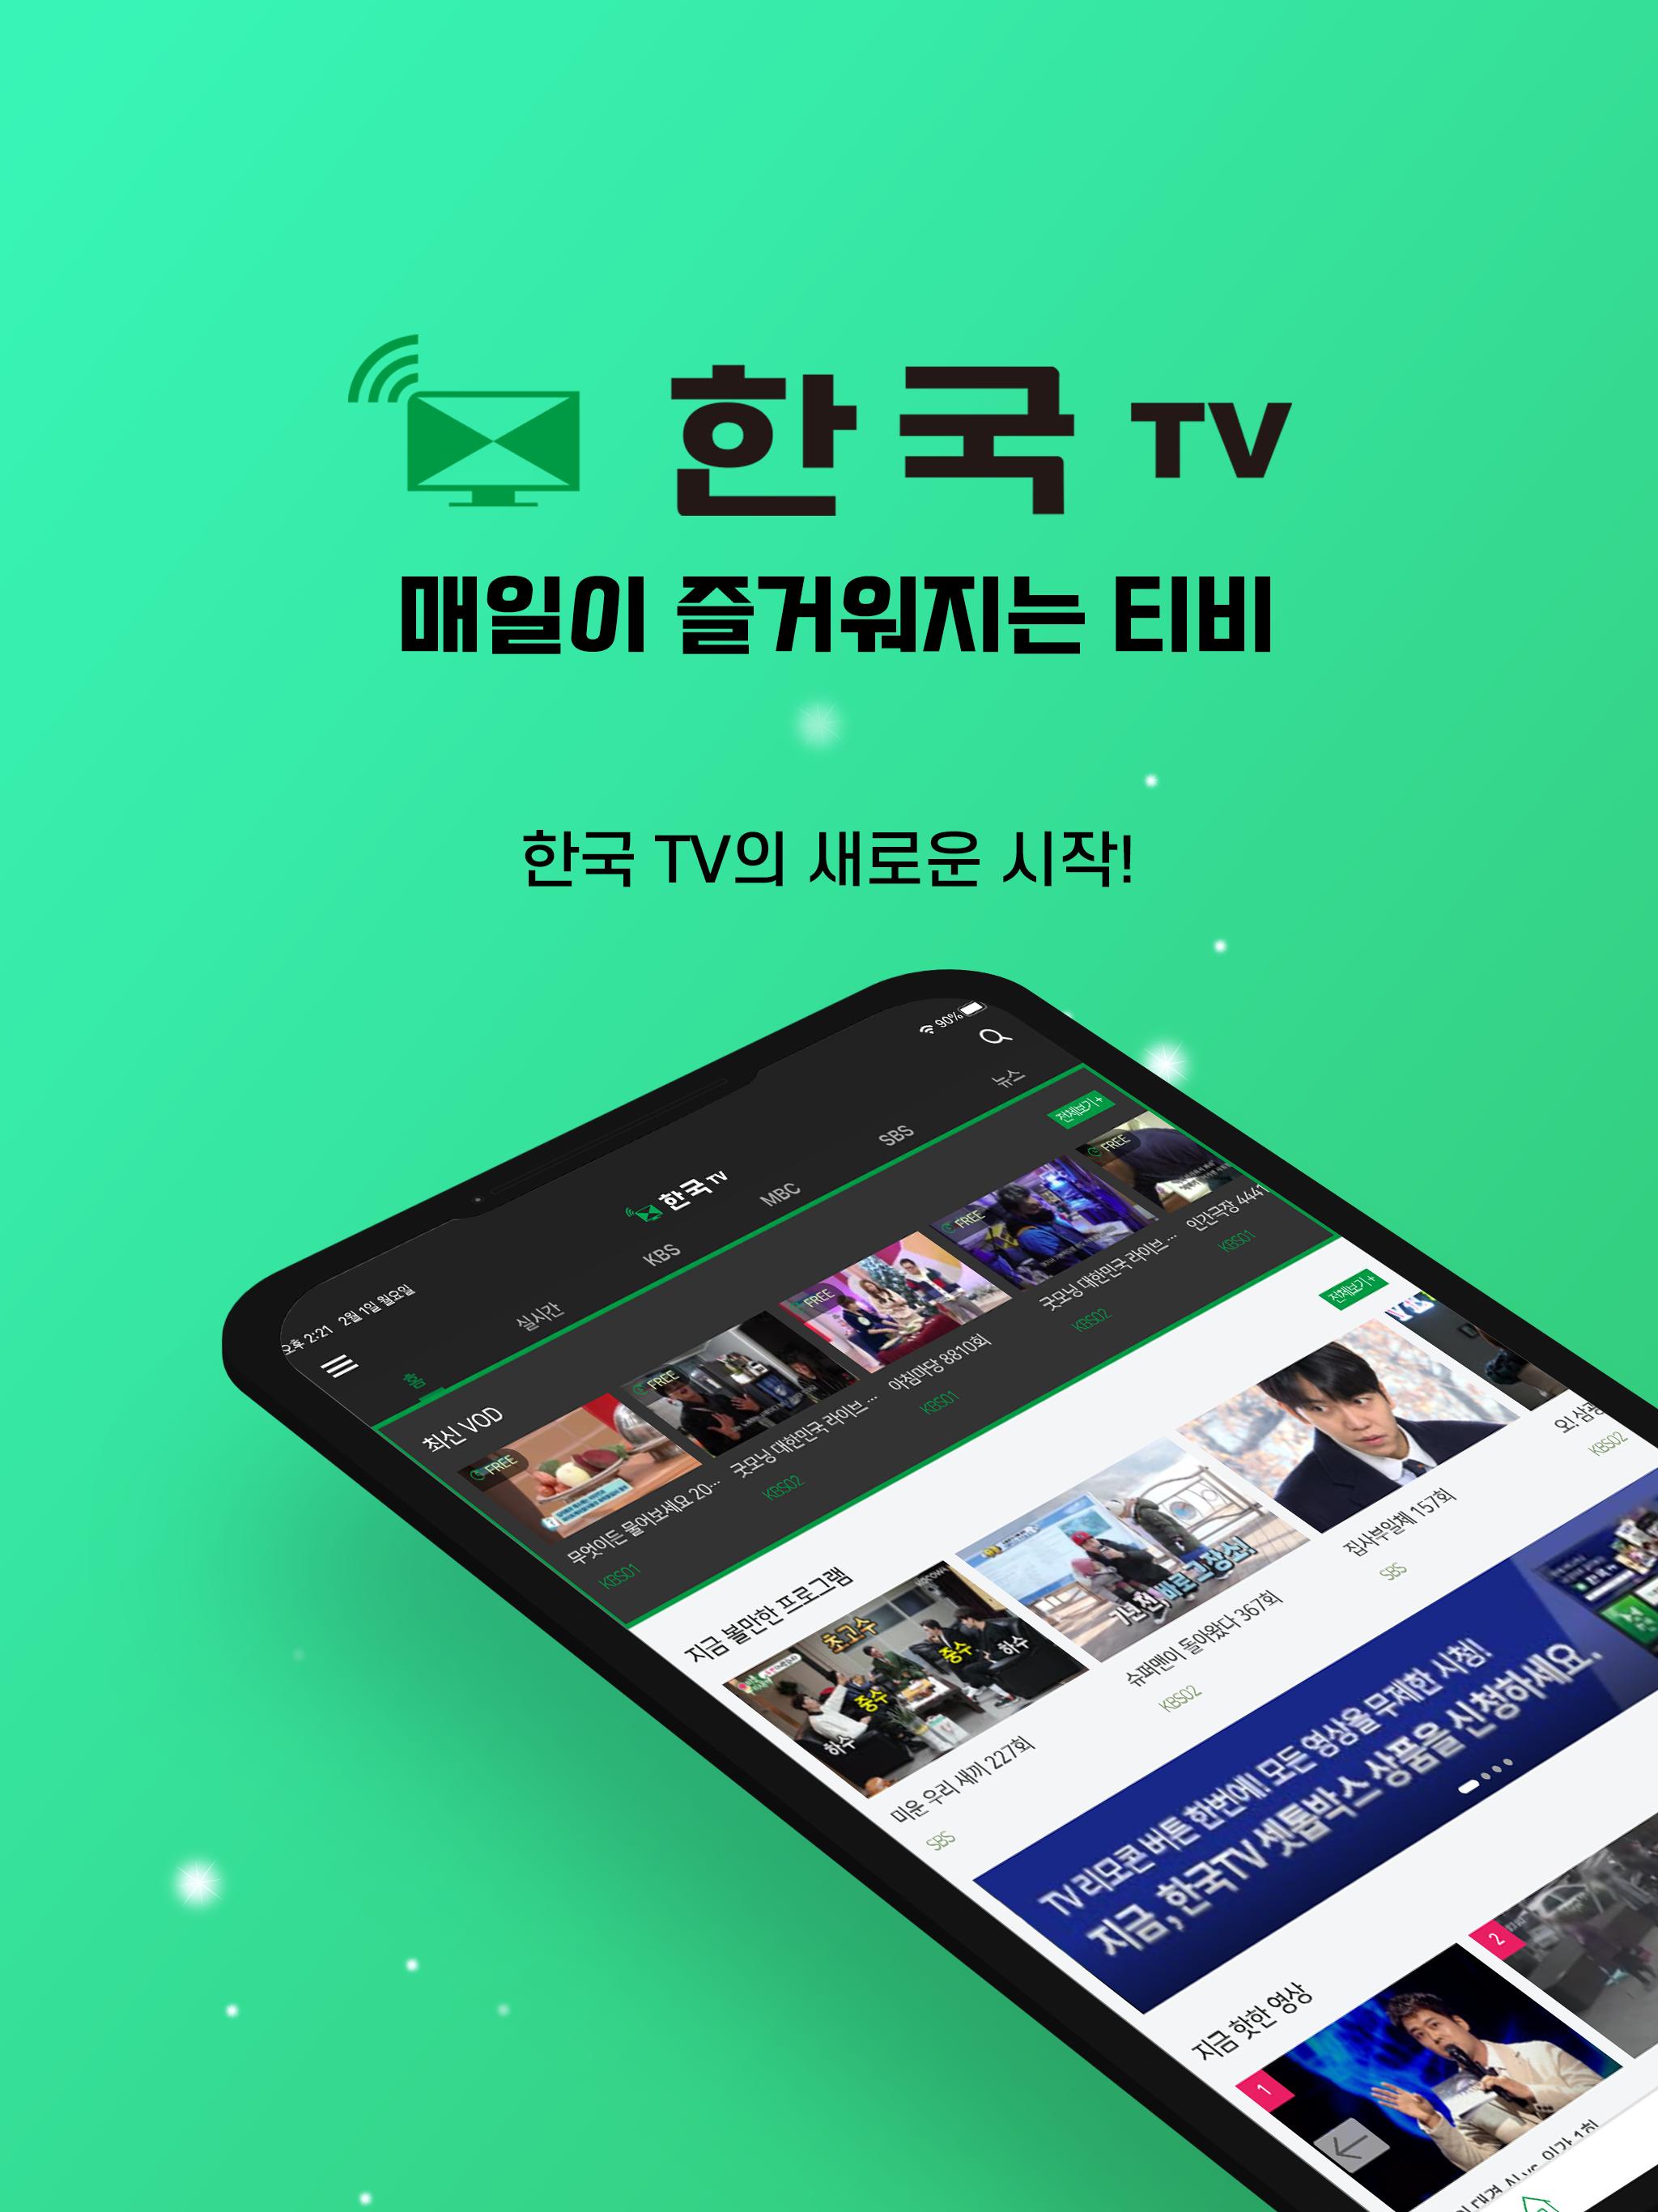 한국TV - 언제 어디서든 골라보고, 함께 볼 수 있는 즐거움